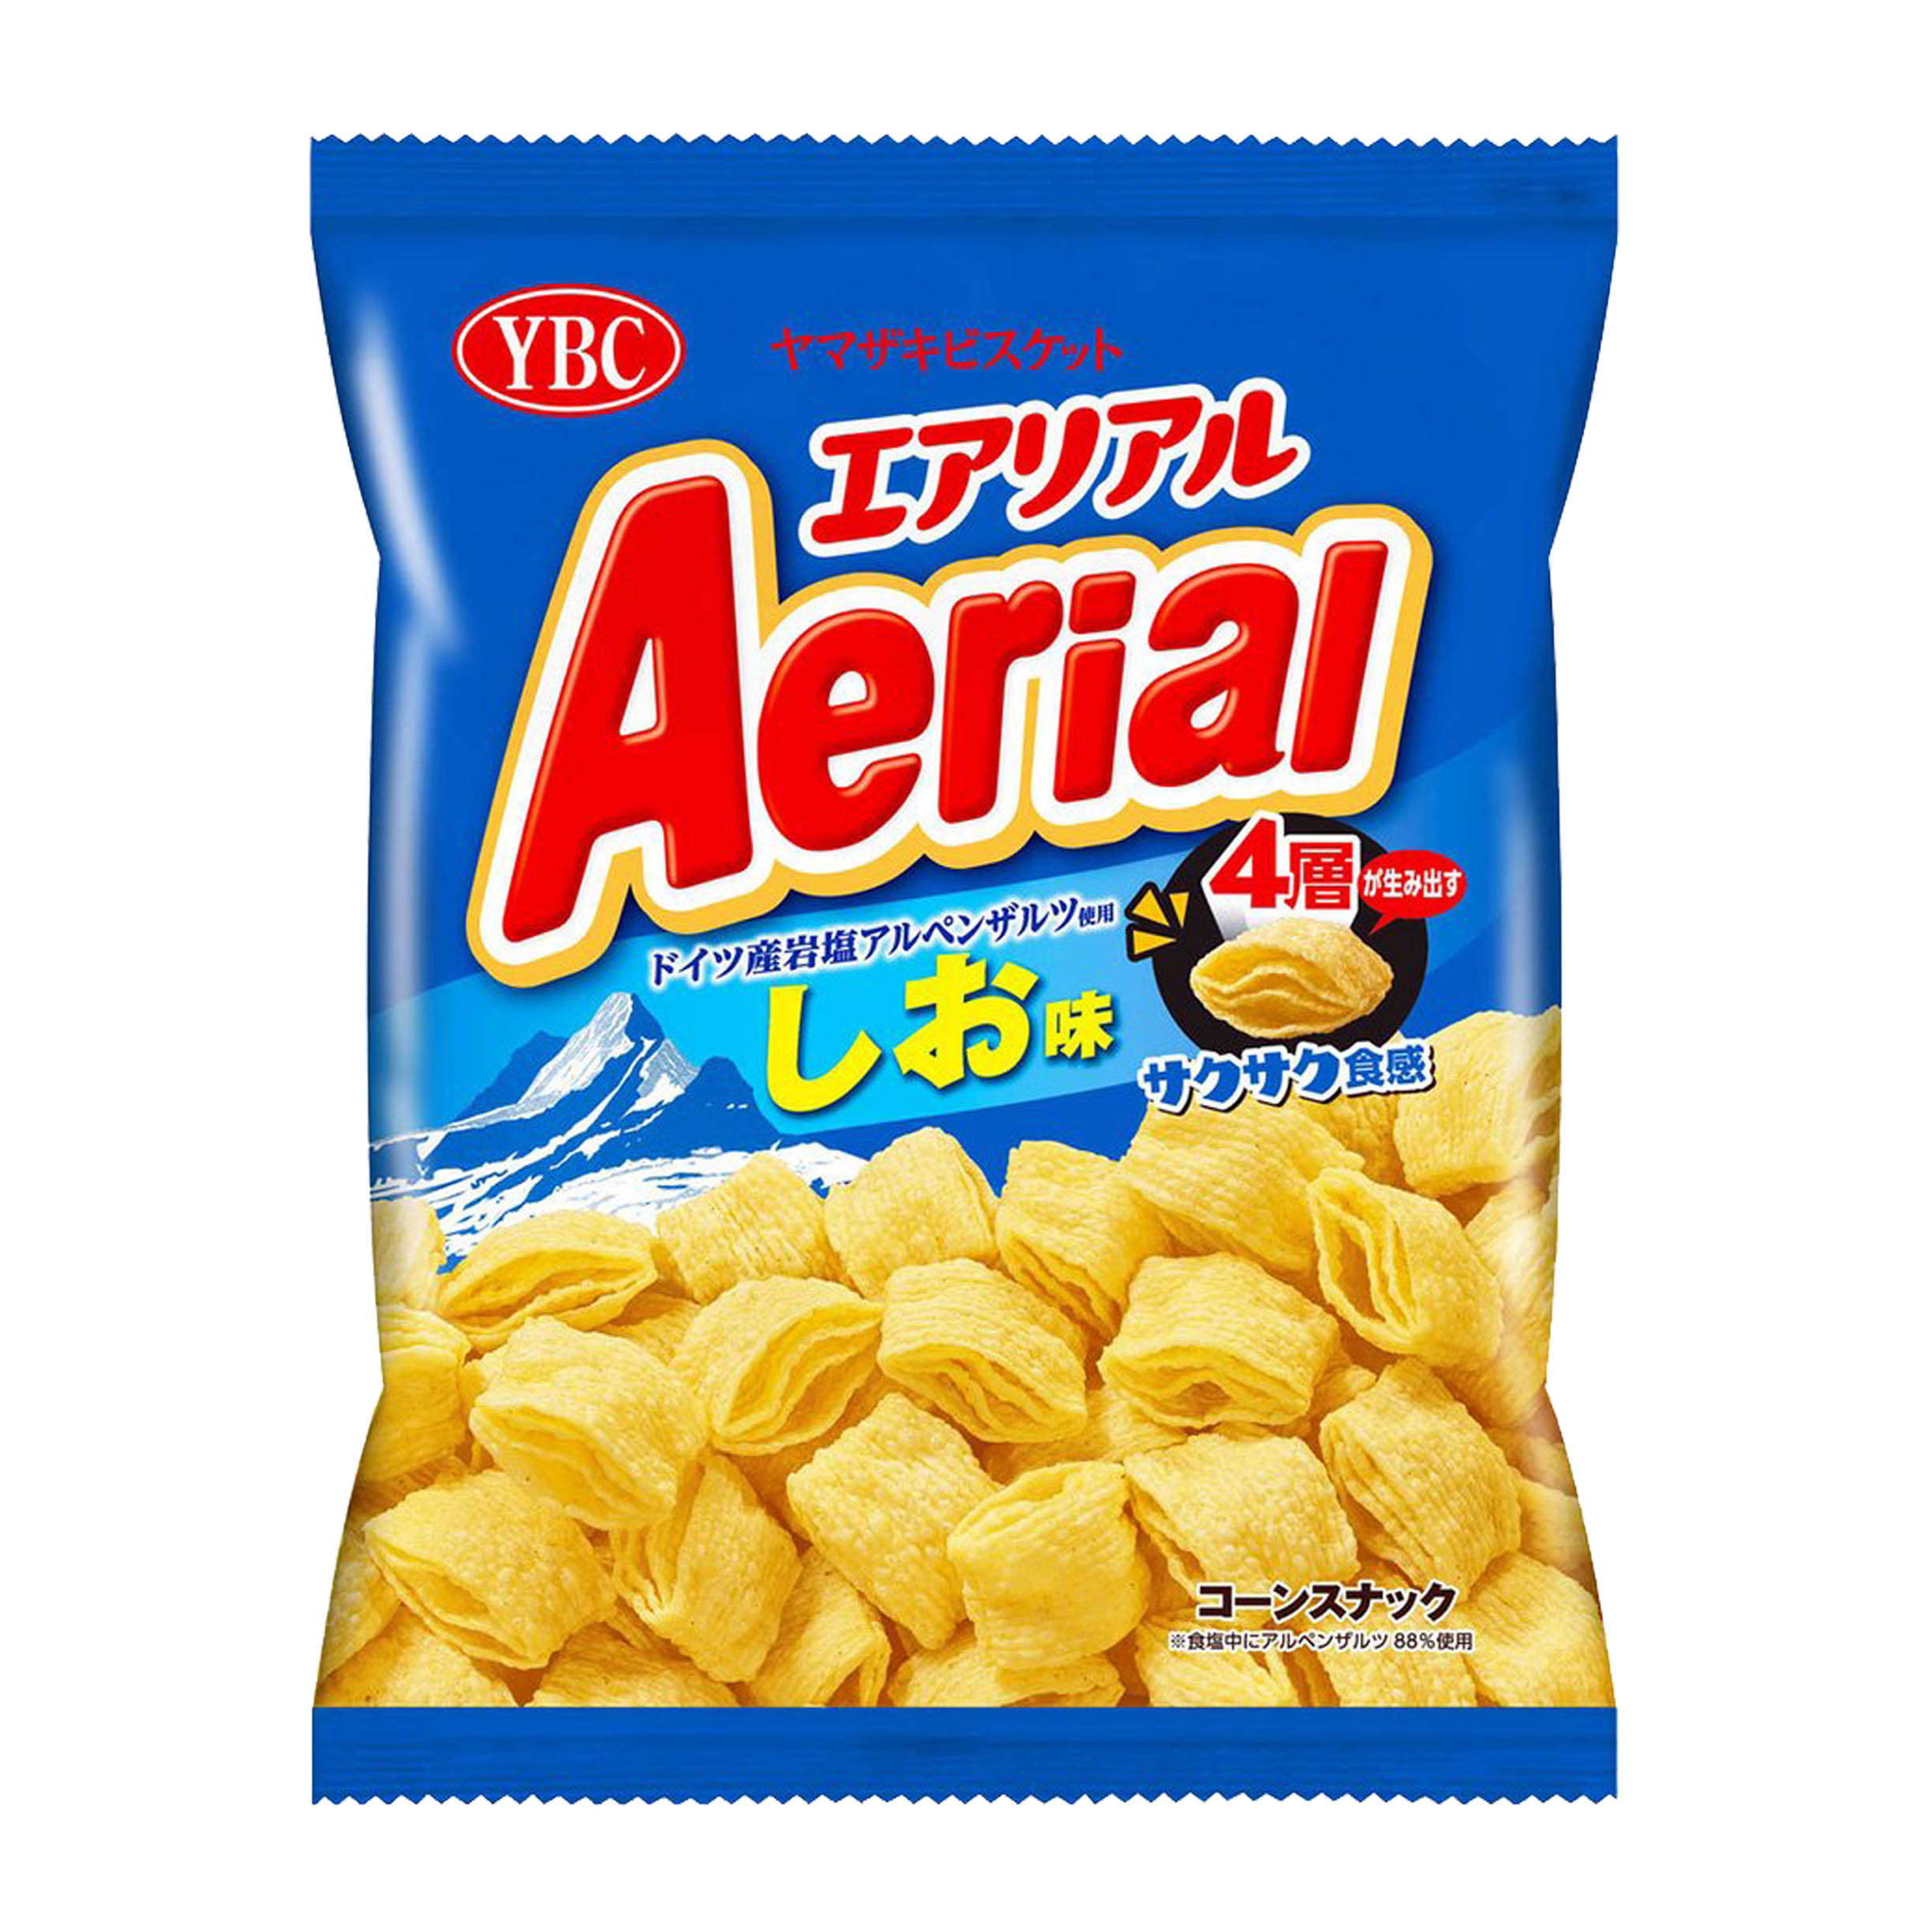 四重脆餅乾 75g-Aerial YBC エアリアル 日本進口製造